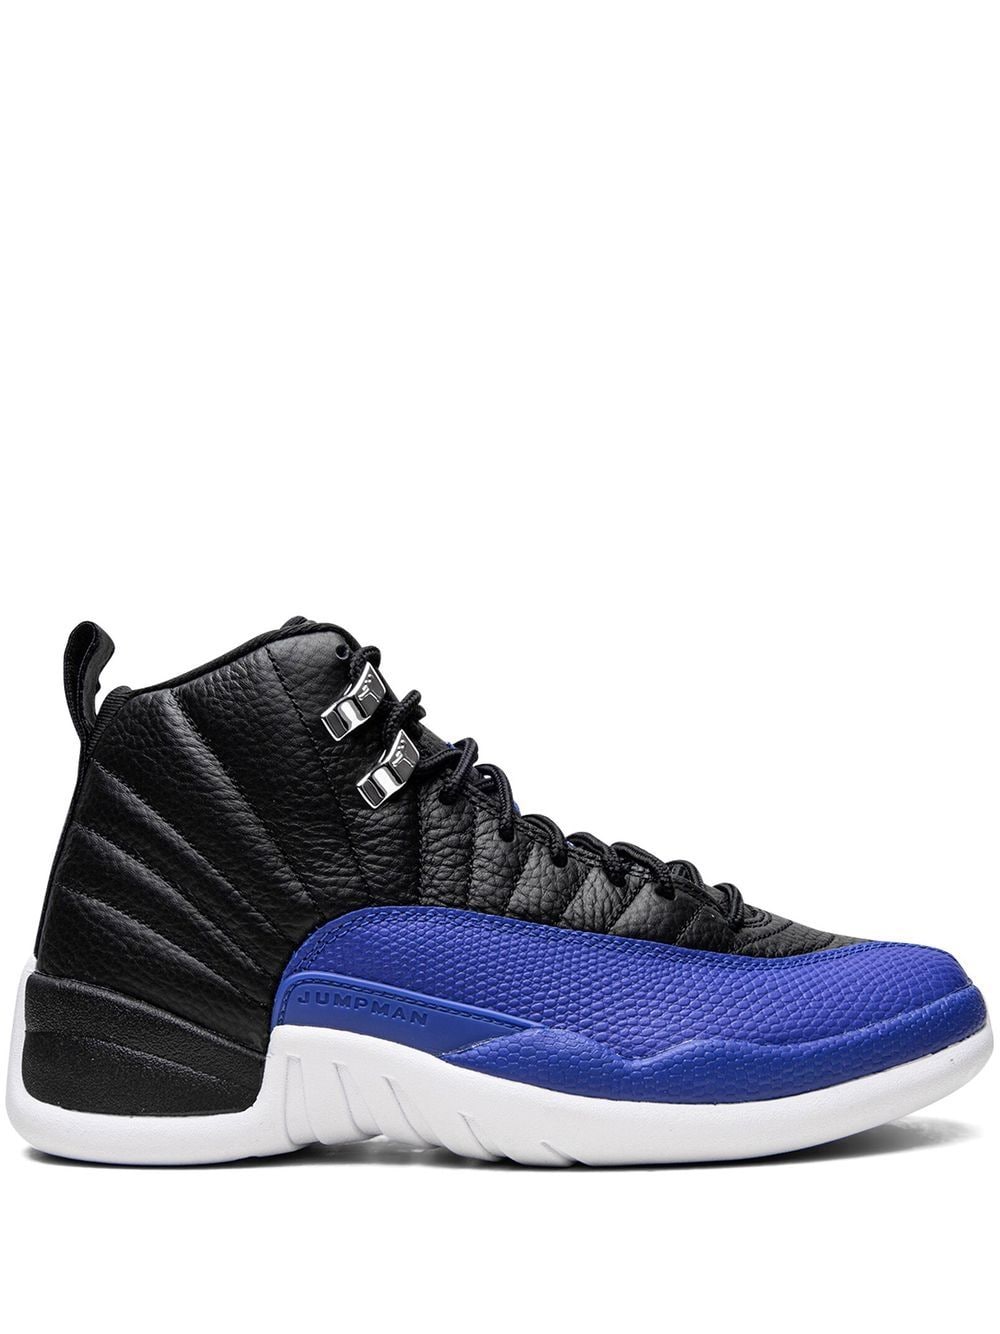 Jordan Air Jordan 12 sneakers - Black